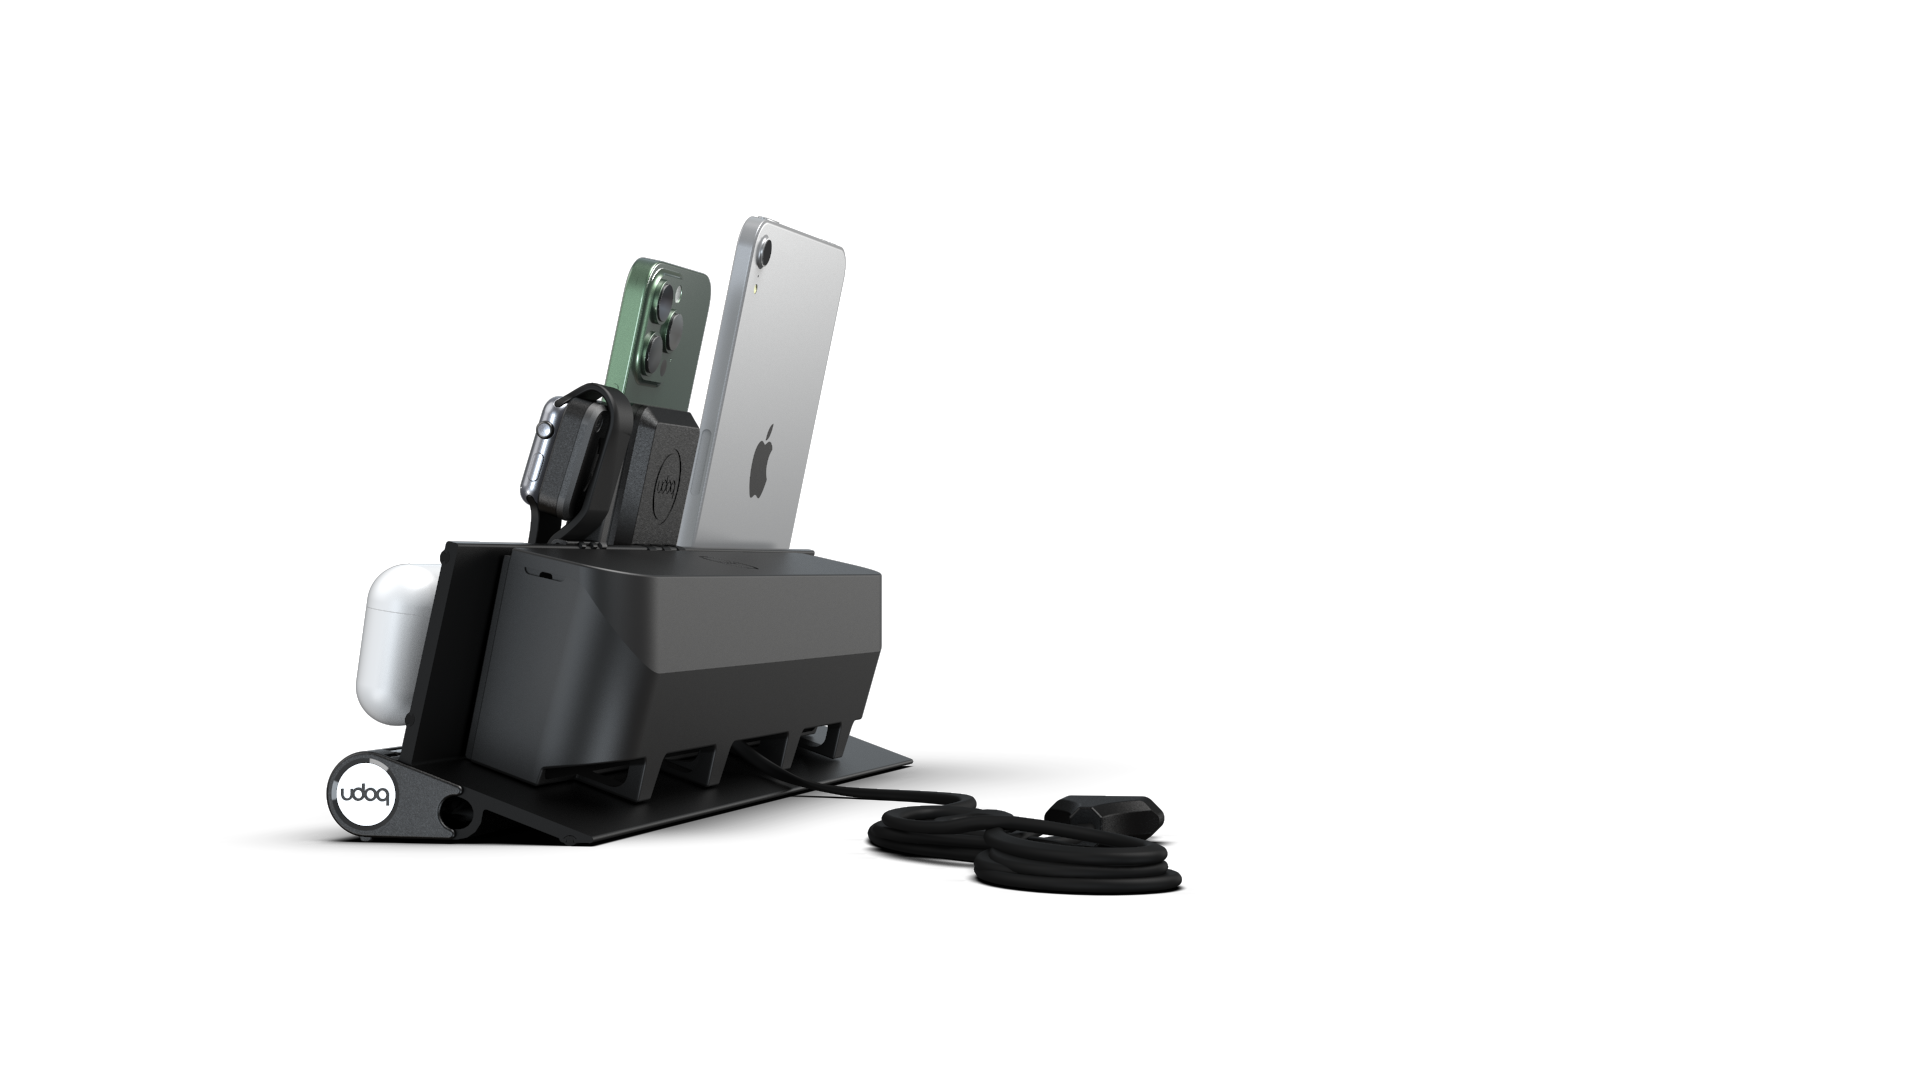 udoq Station de recharge multiple 400 en noir avec chargeur MagSafe et Power Delivery, Apple Watch adaptateur